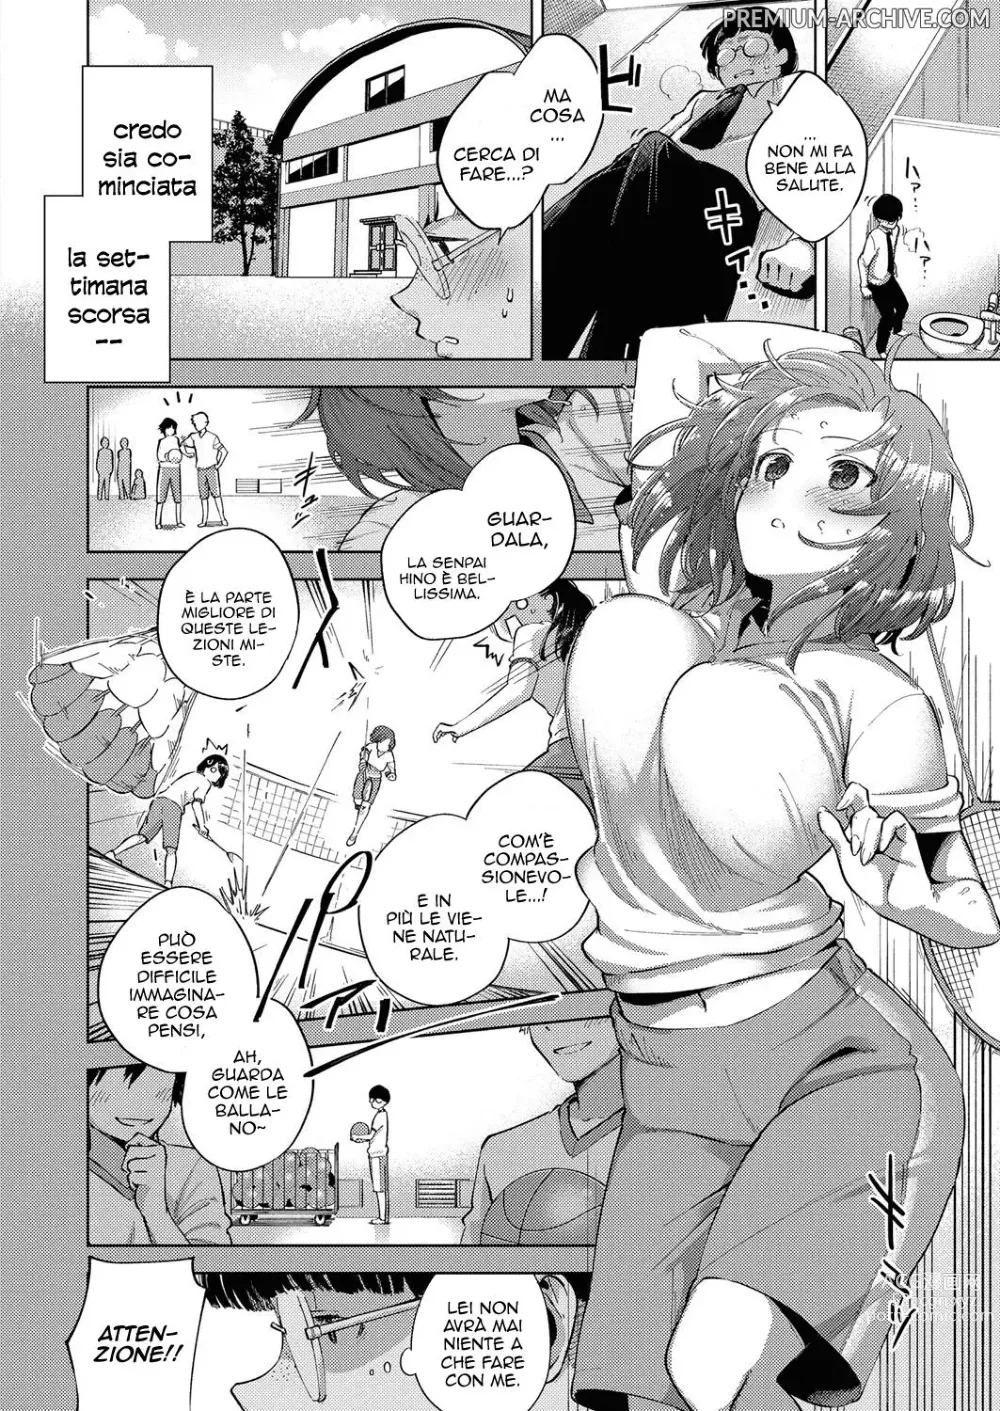 Page 4 of manga Il Feromone che da Dipendenza